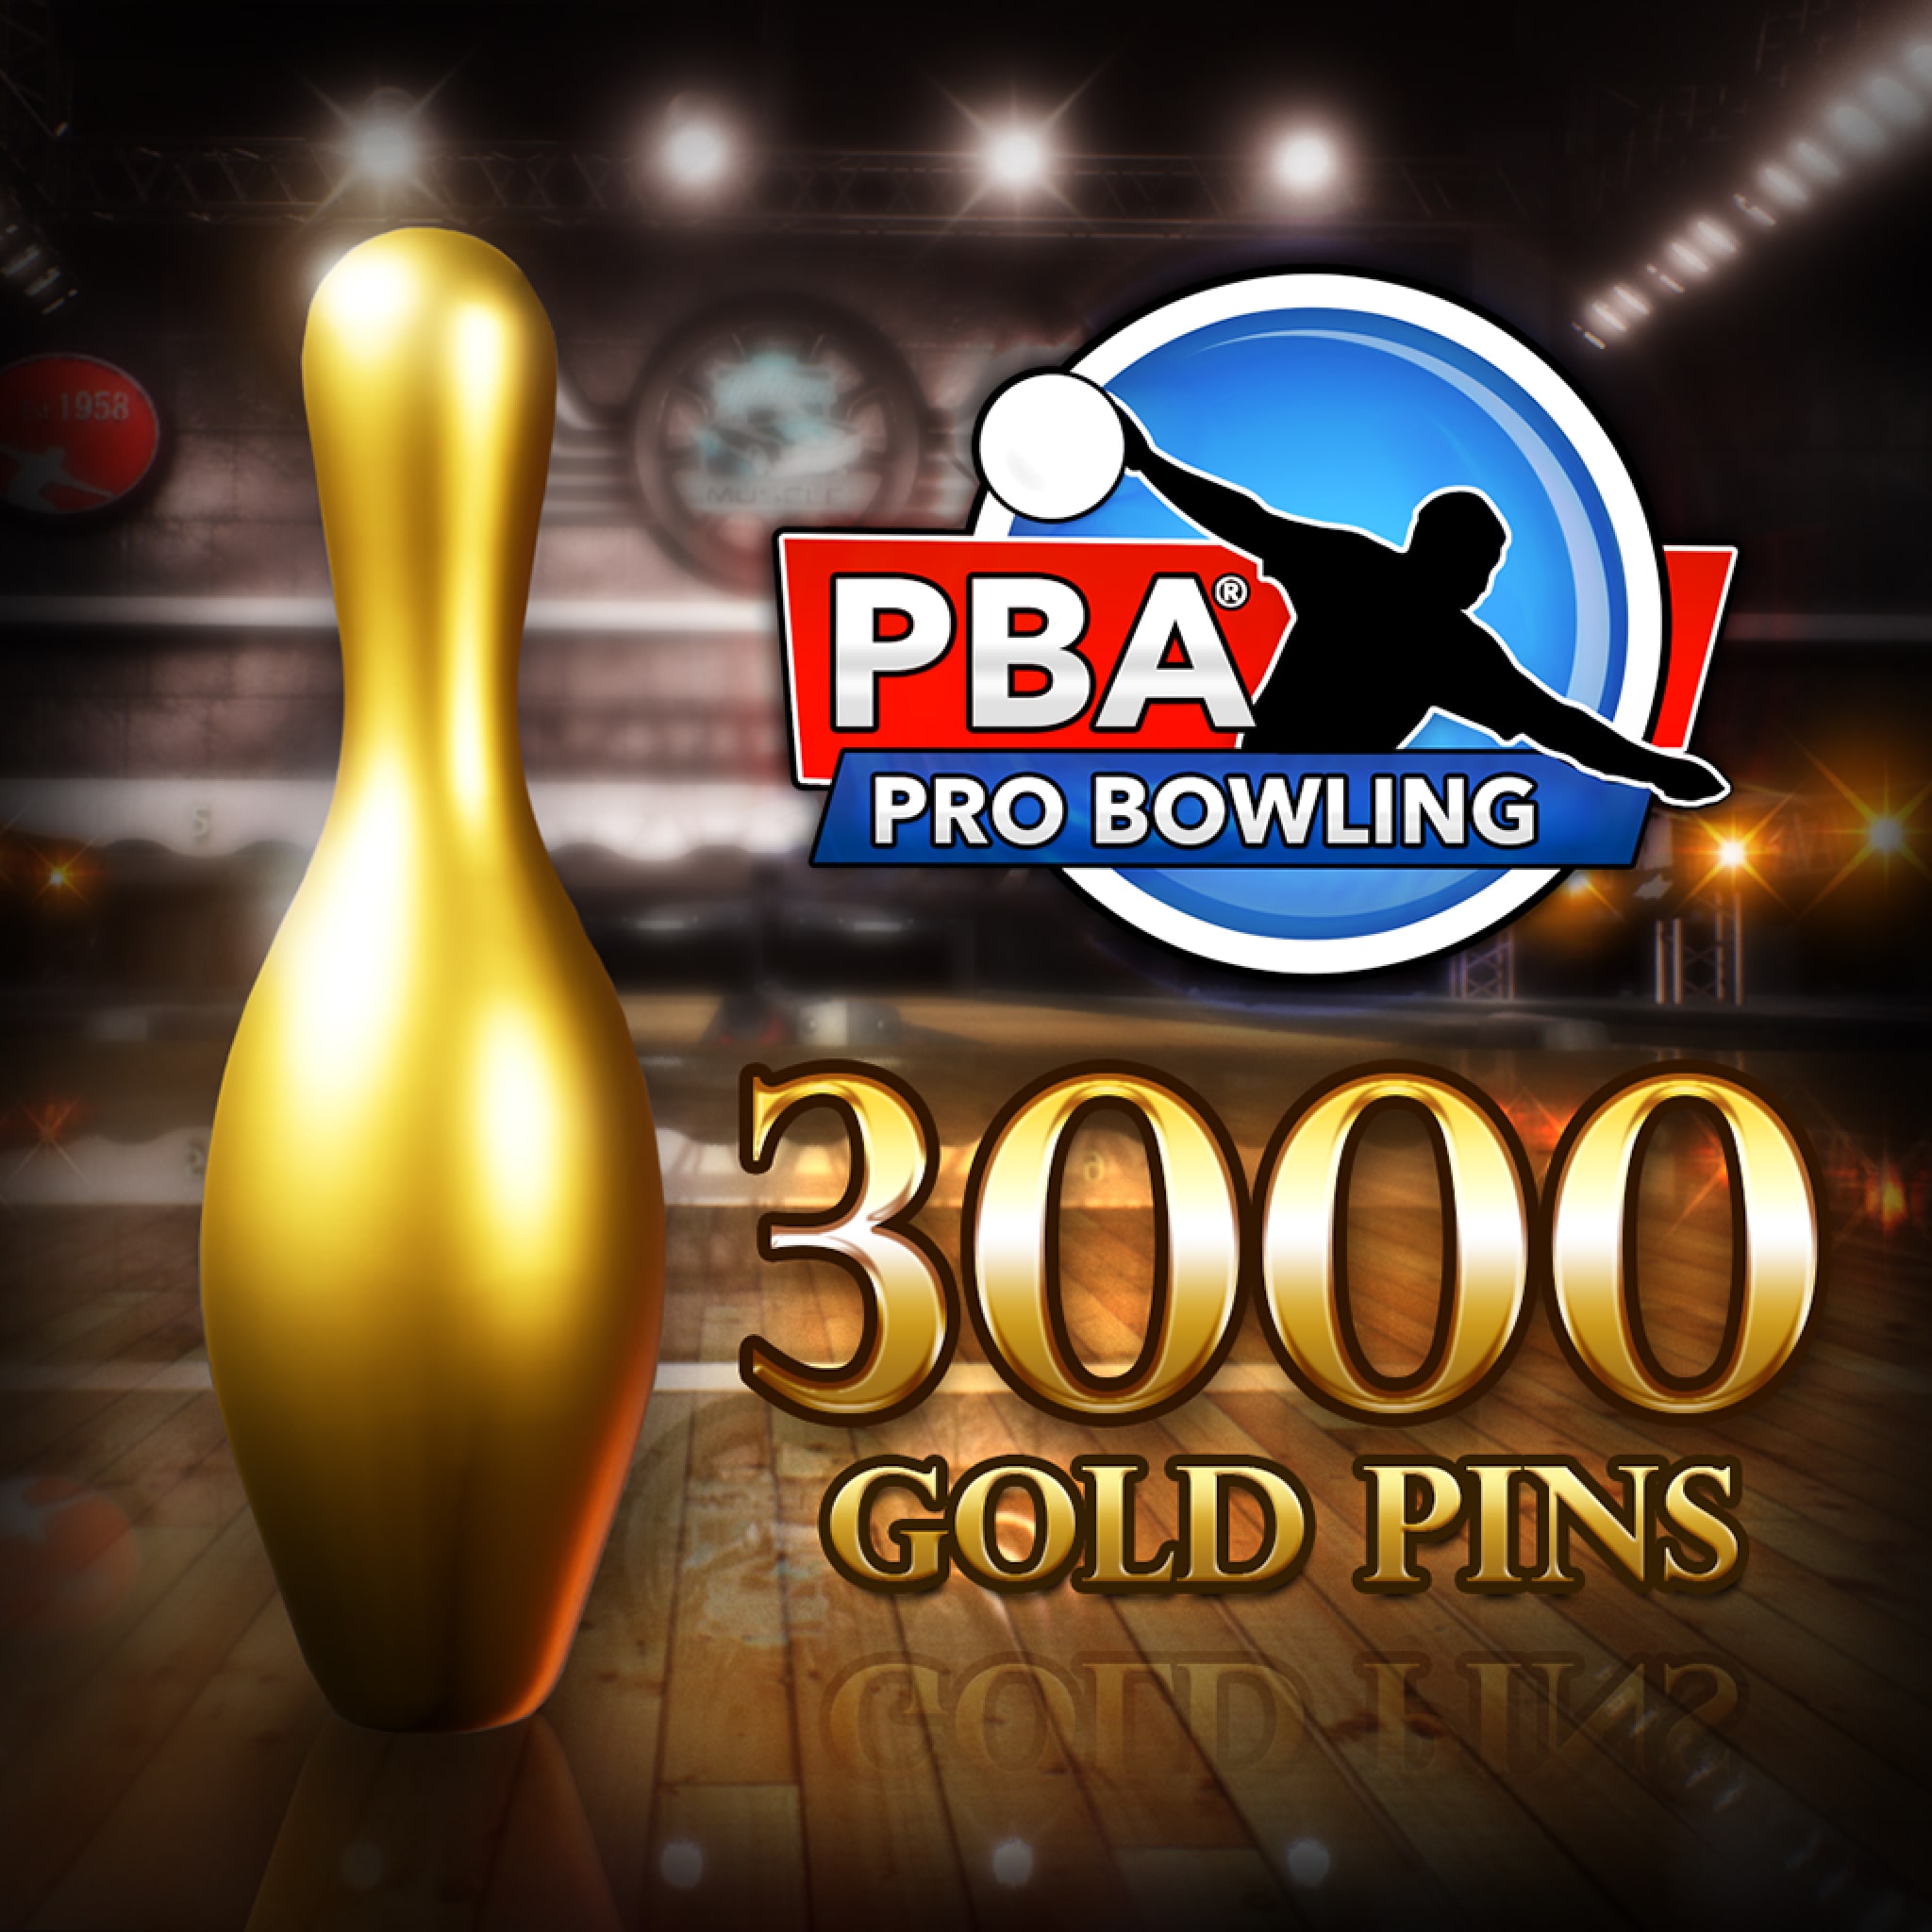 PBA Pro Bowling: 3,000 Gold Pins